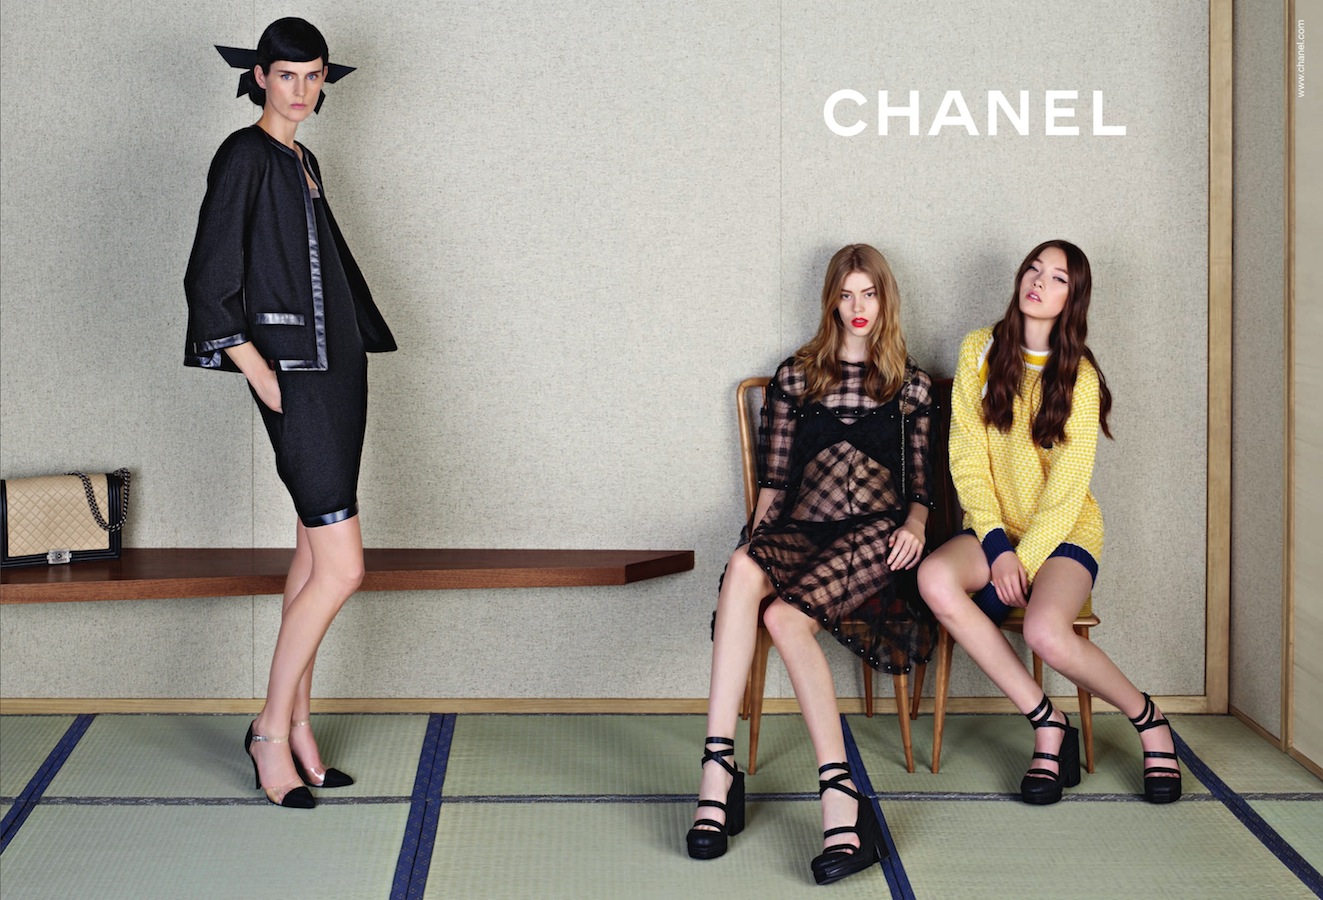 T-E-S-S: Chanel S/S 2013 Ad Campaign